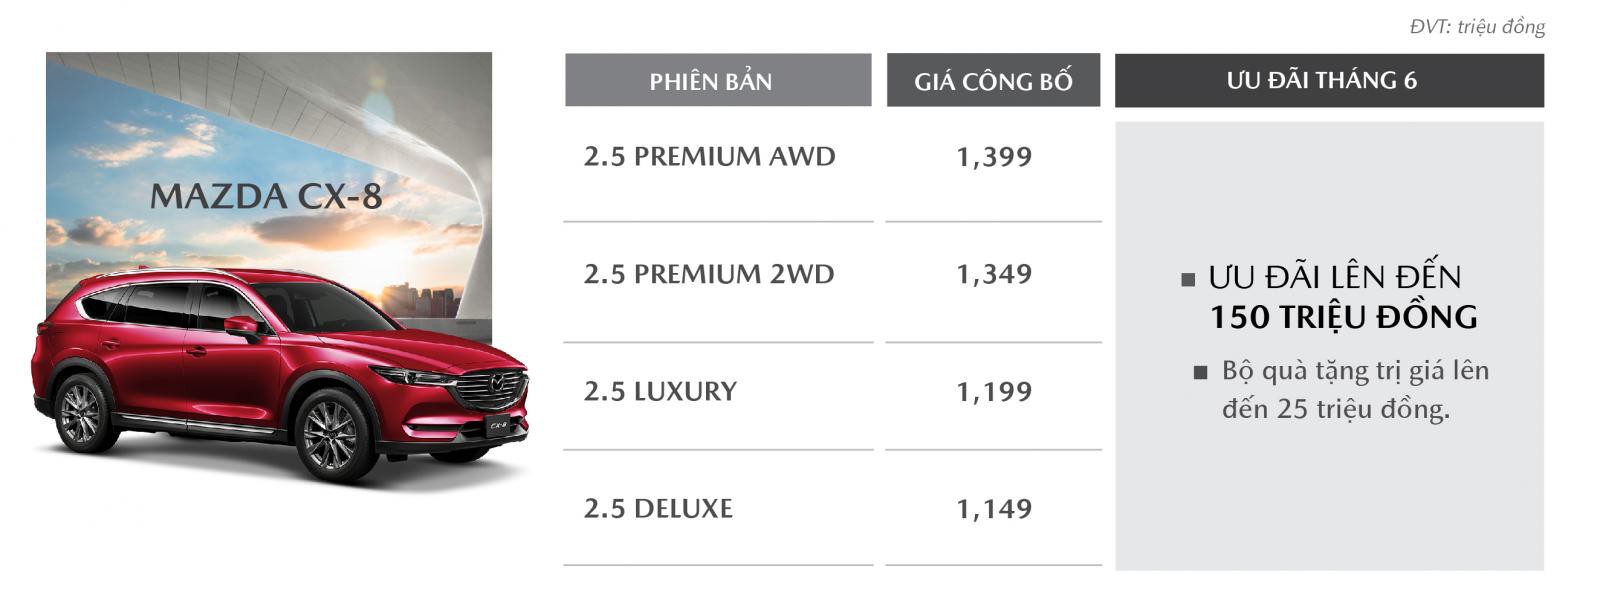 Mazda CX-8 ưu đãi cao nhất đến 175 triệu đồng